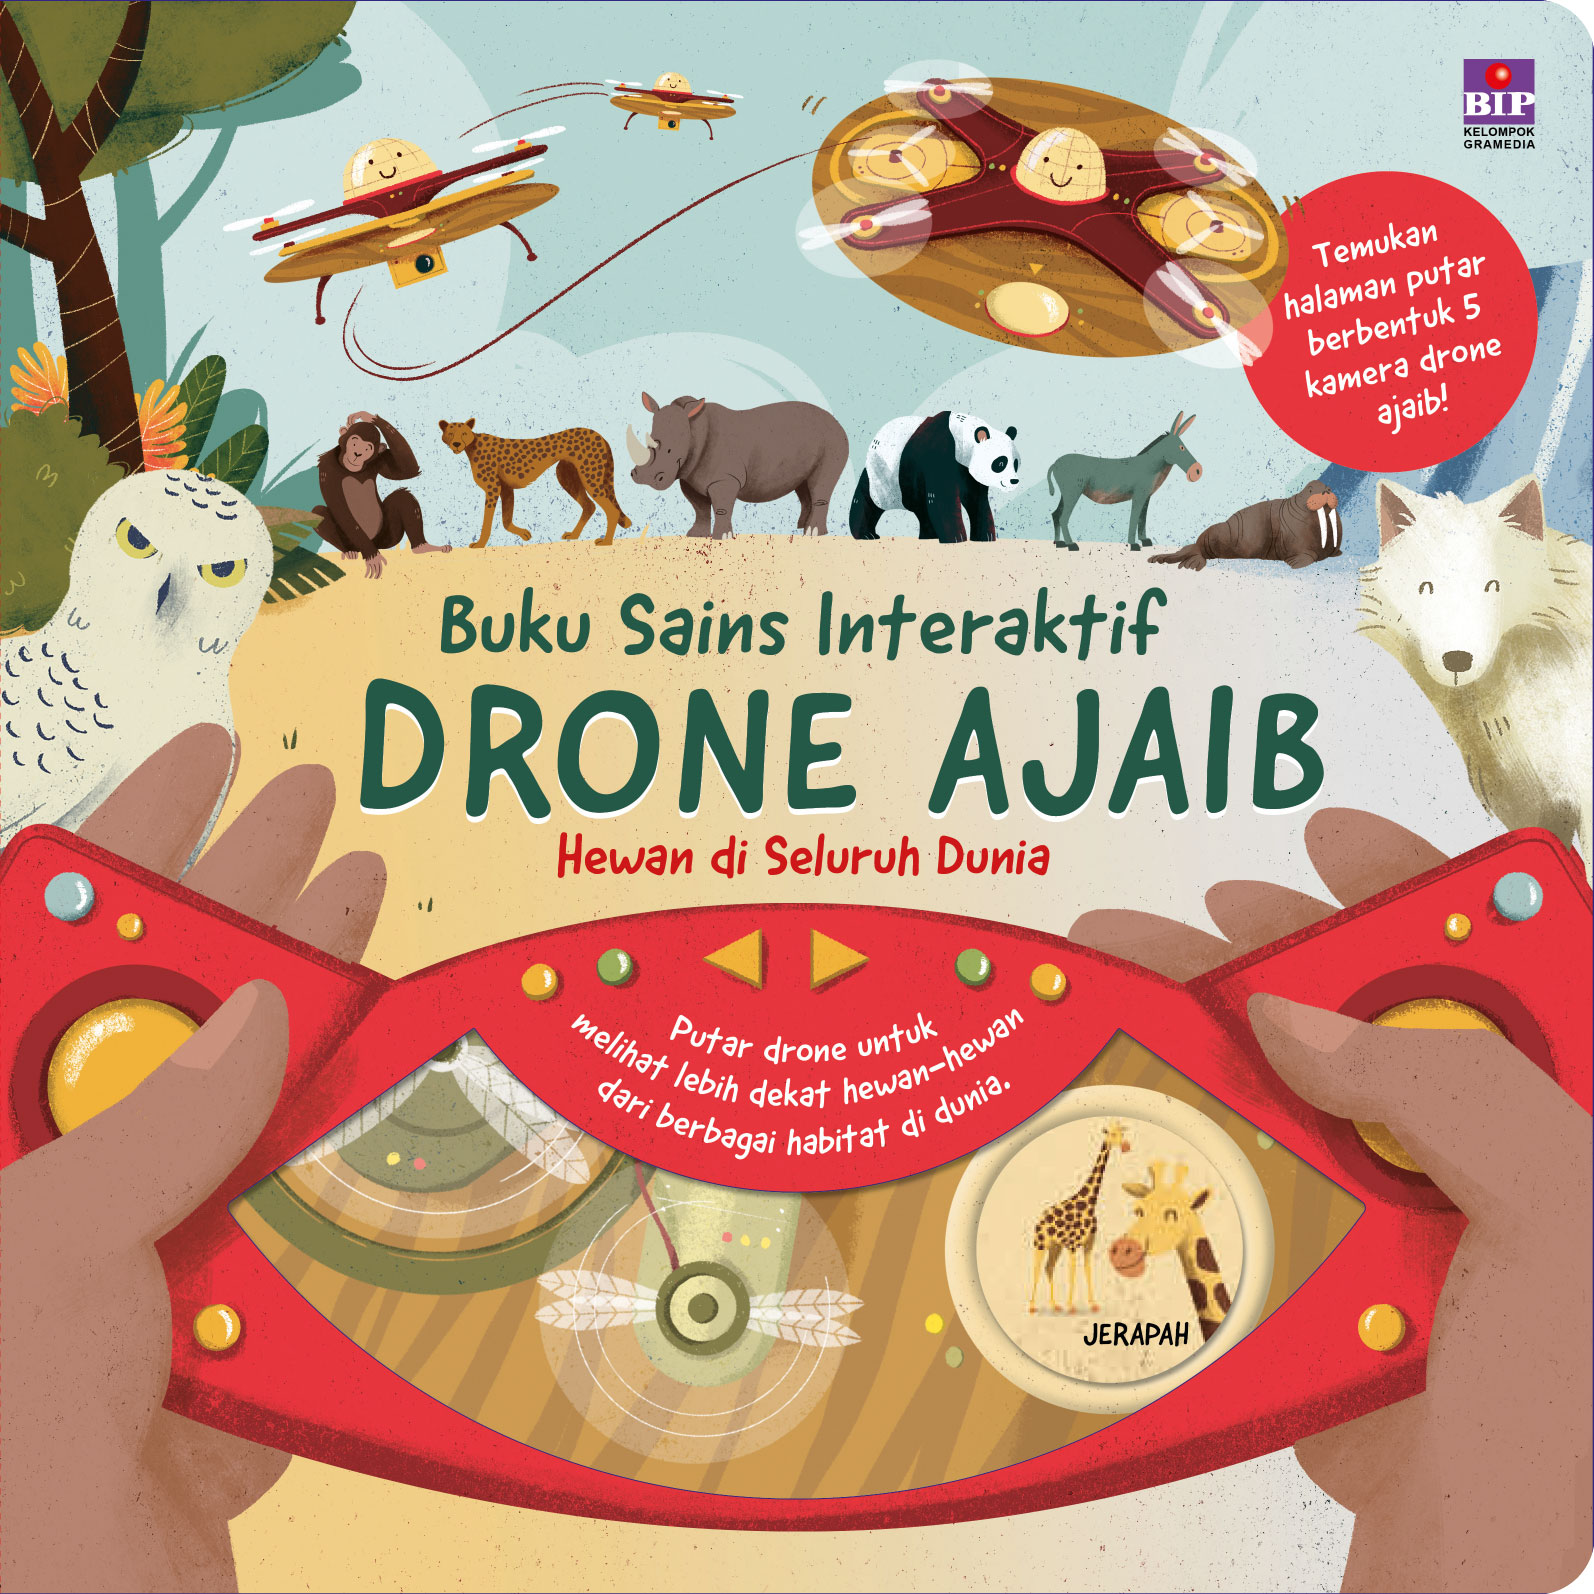 Buku Sains Interaktif Drone Ajaib: Hewan di Seluruh Dunia